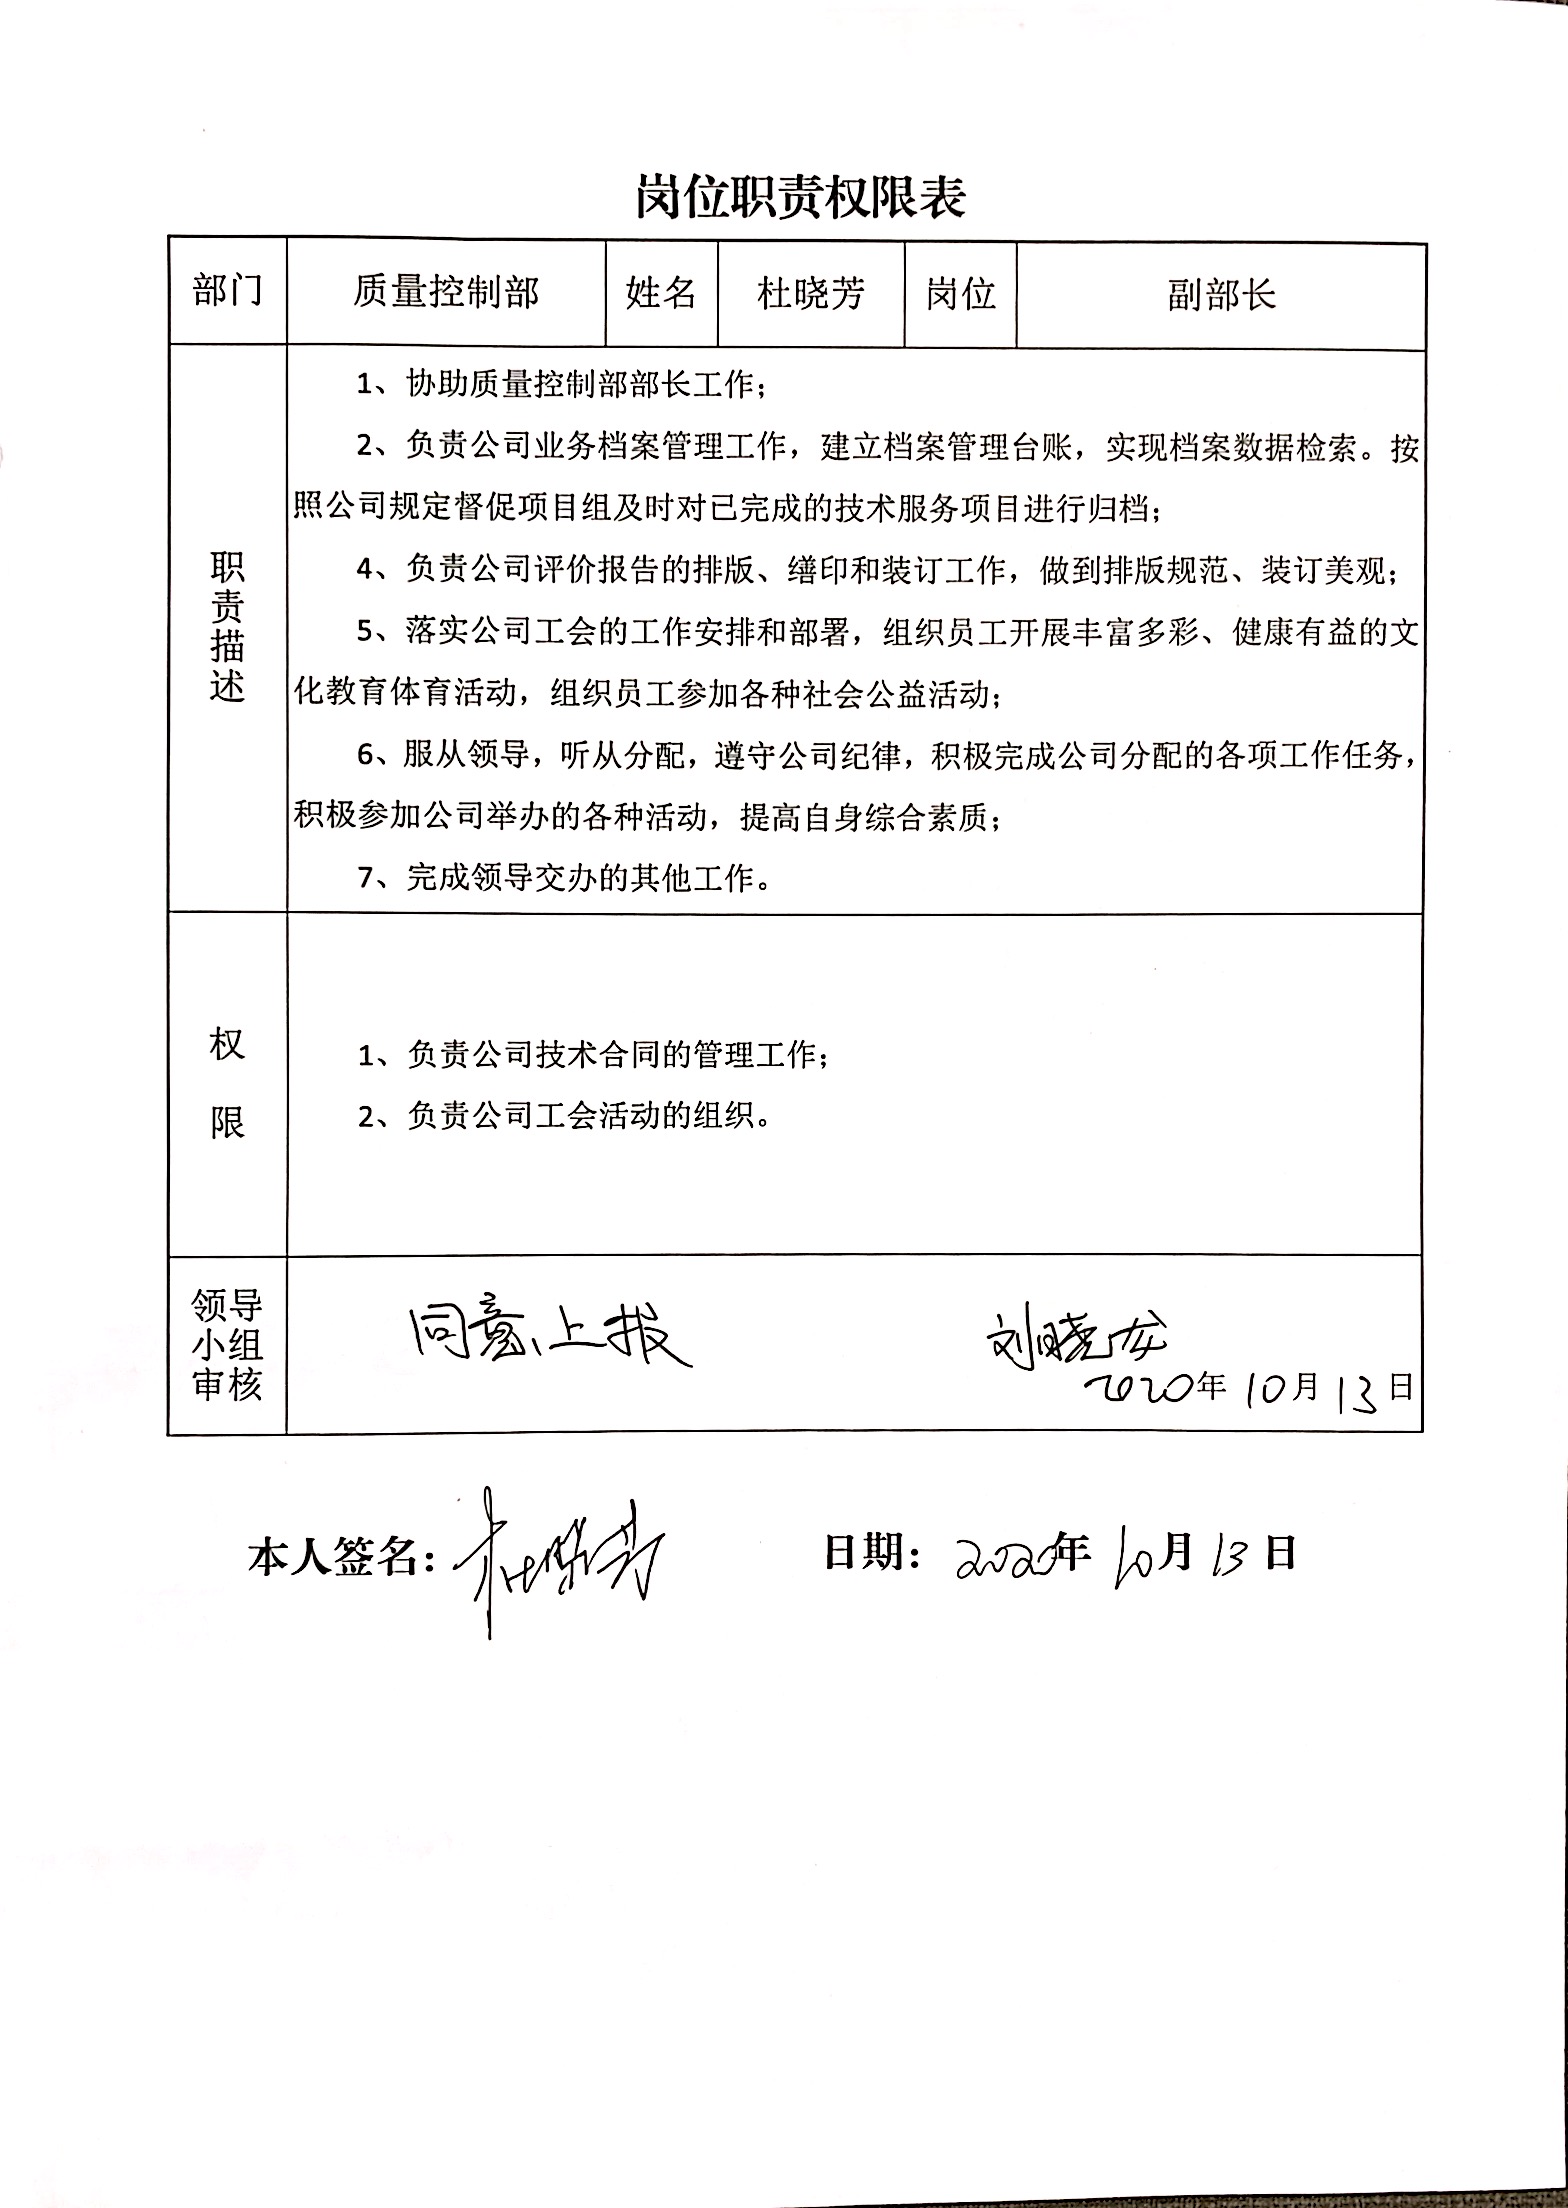 质量控制部副部长岗位职权权限表.JPG